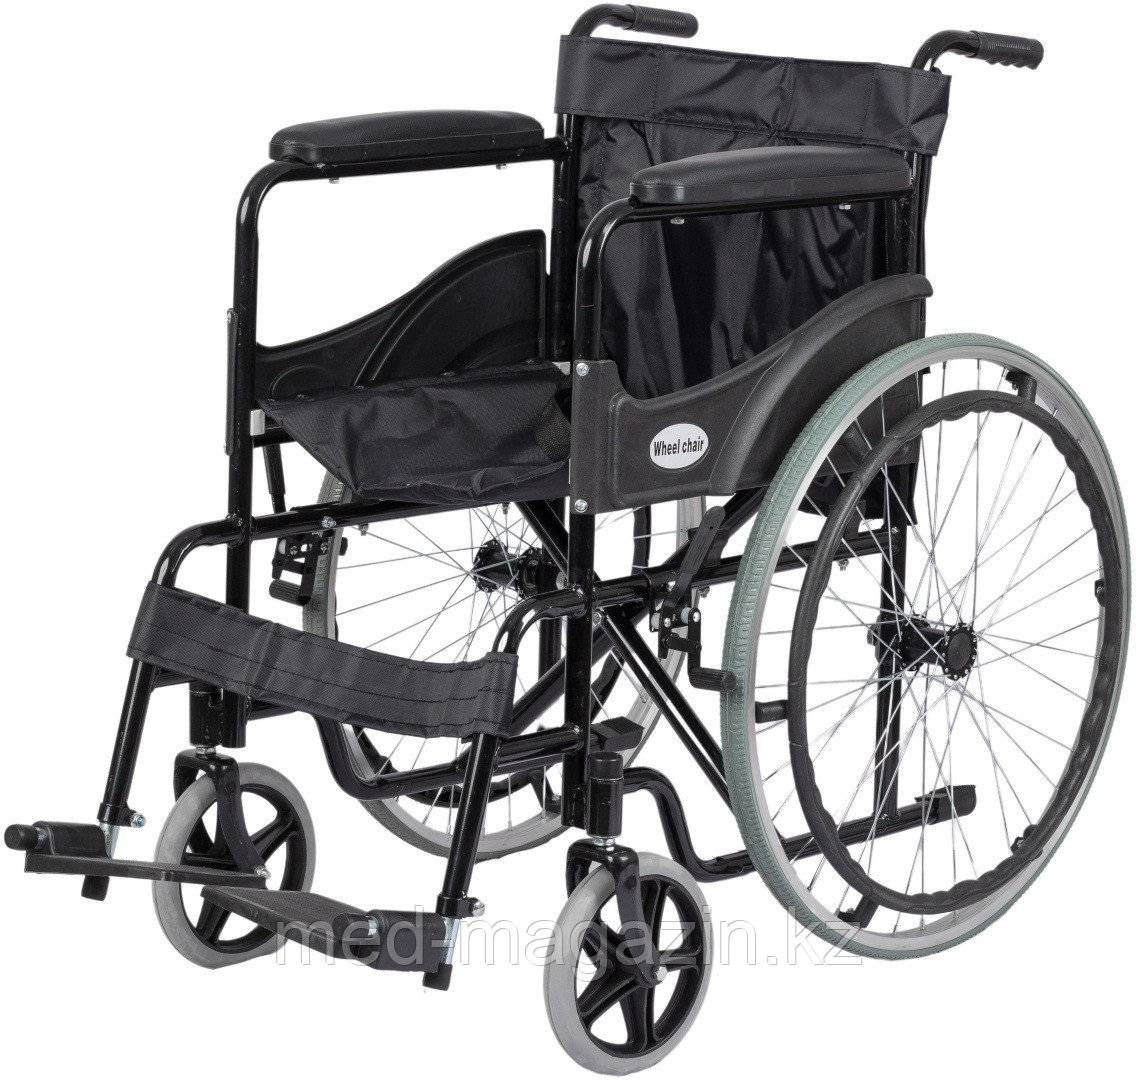 Amedon кресло-коляска МР-20221170 120 кг серый, черный